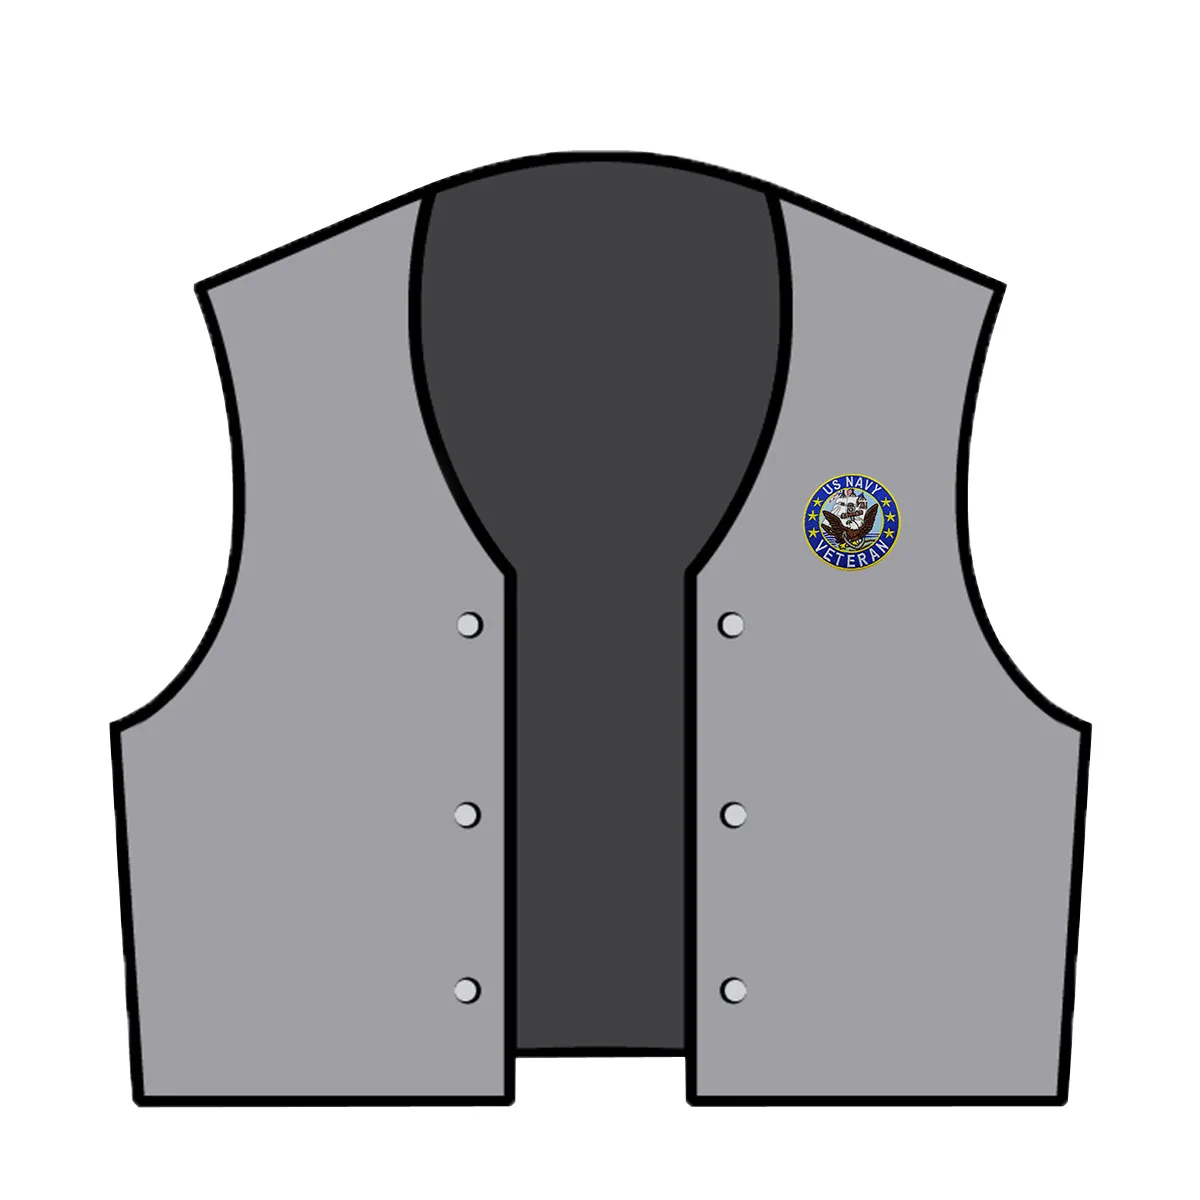 カスタム左胸刺繍ベテランネイビーパッチ鉄の縫製ジャケットバックとT-たわごとまたは帽子cap286w